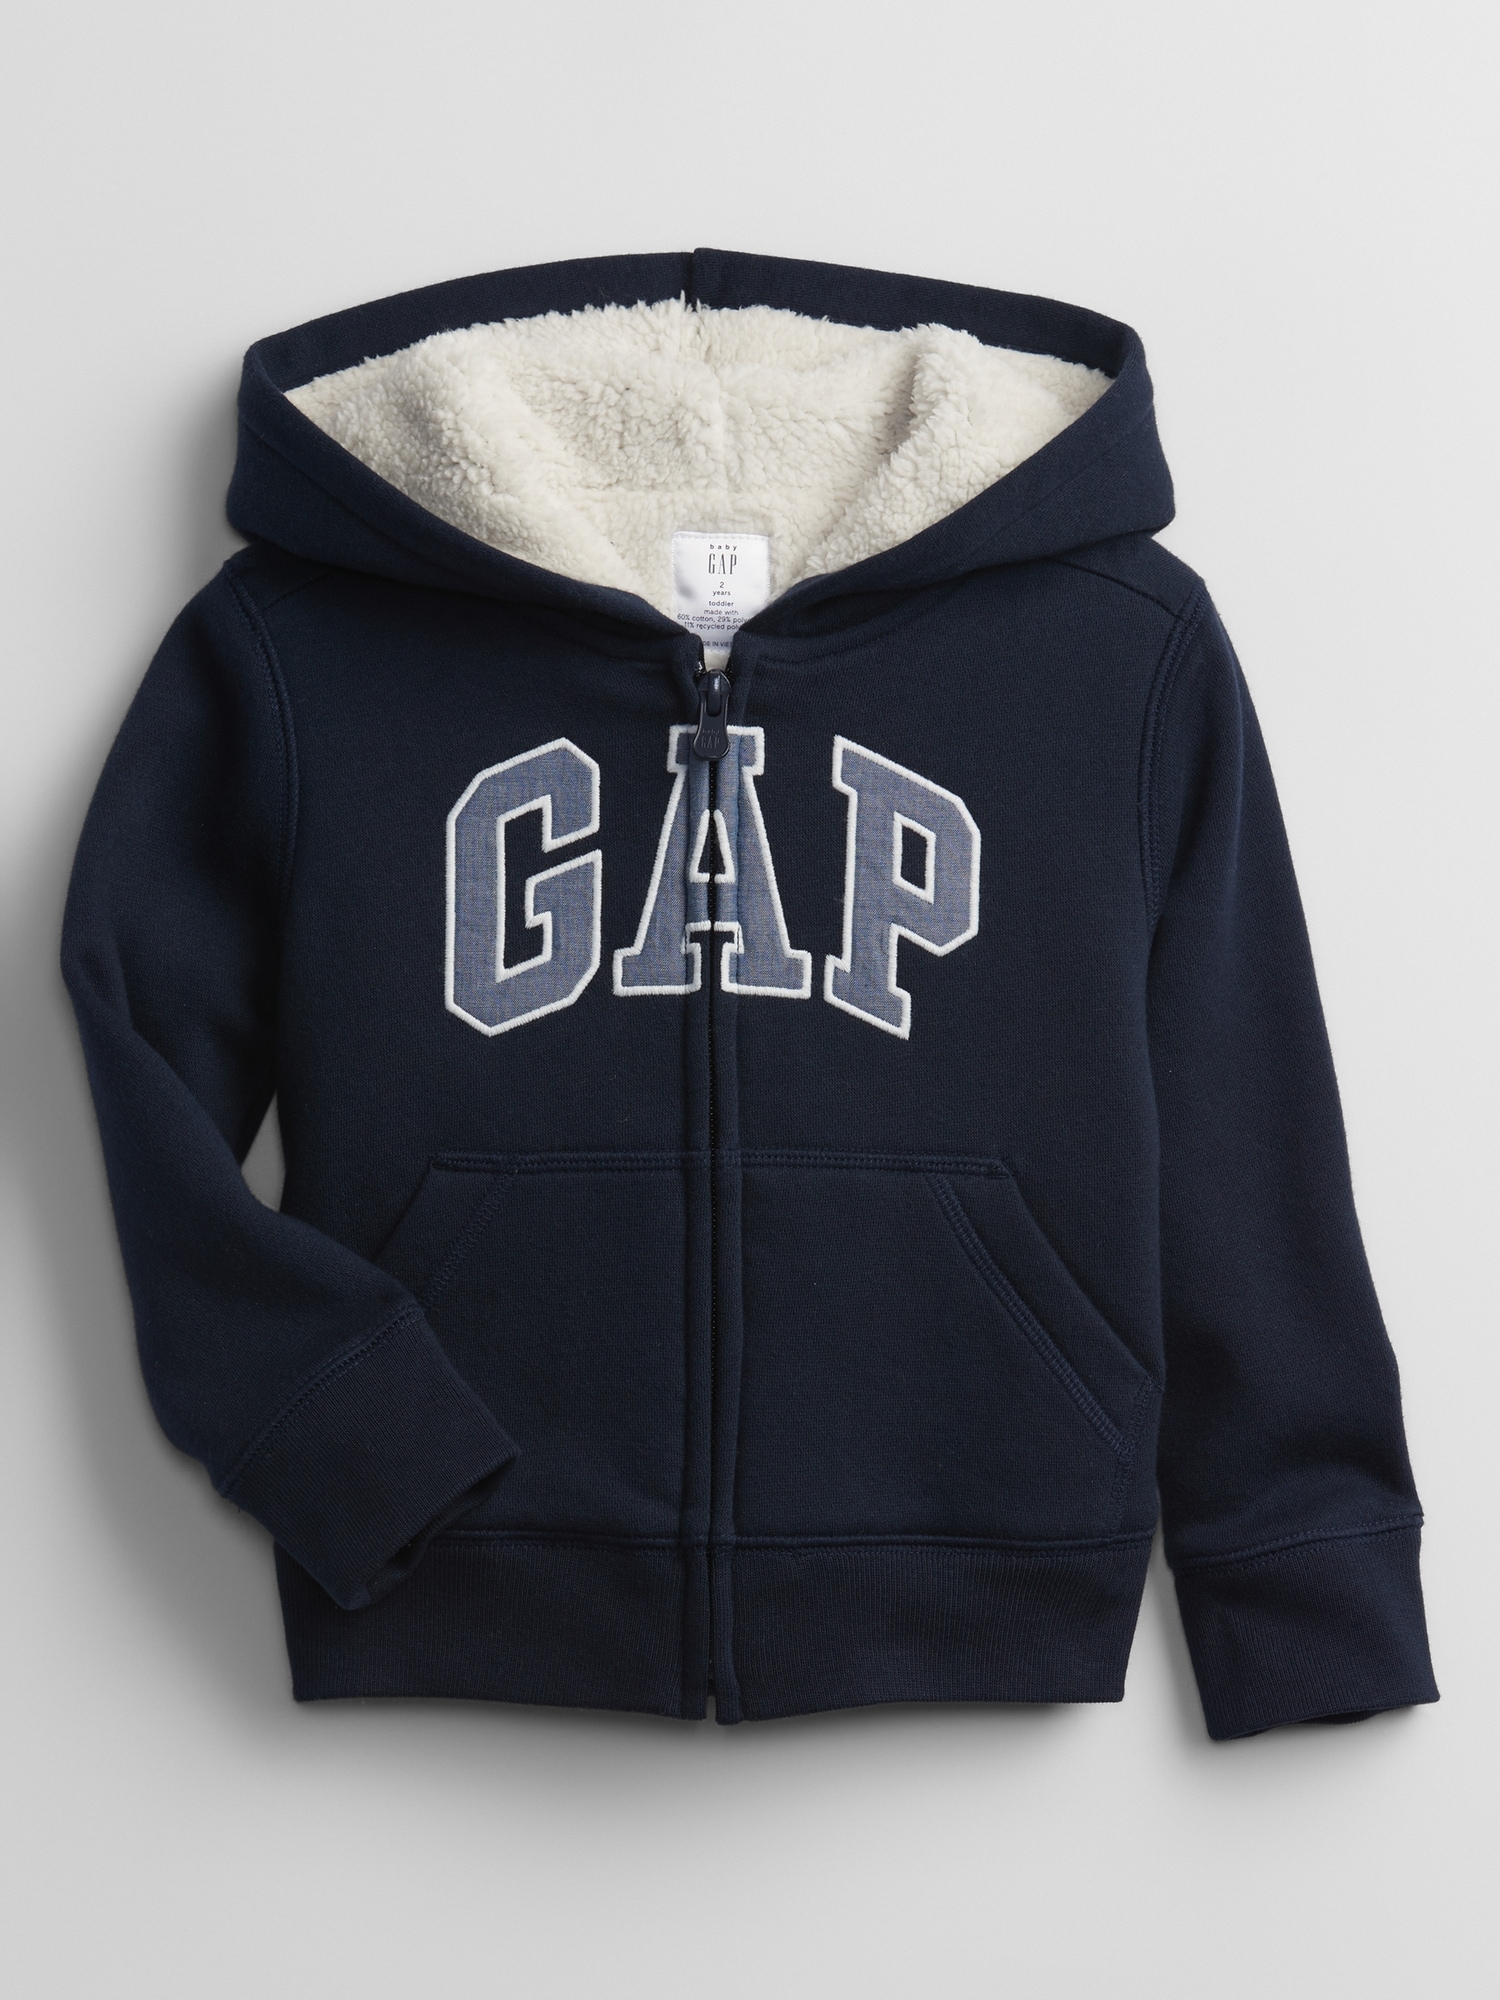 갭 babyGap Logo Sherpa-Lined Zip Hoodie